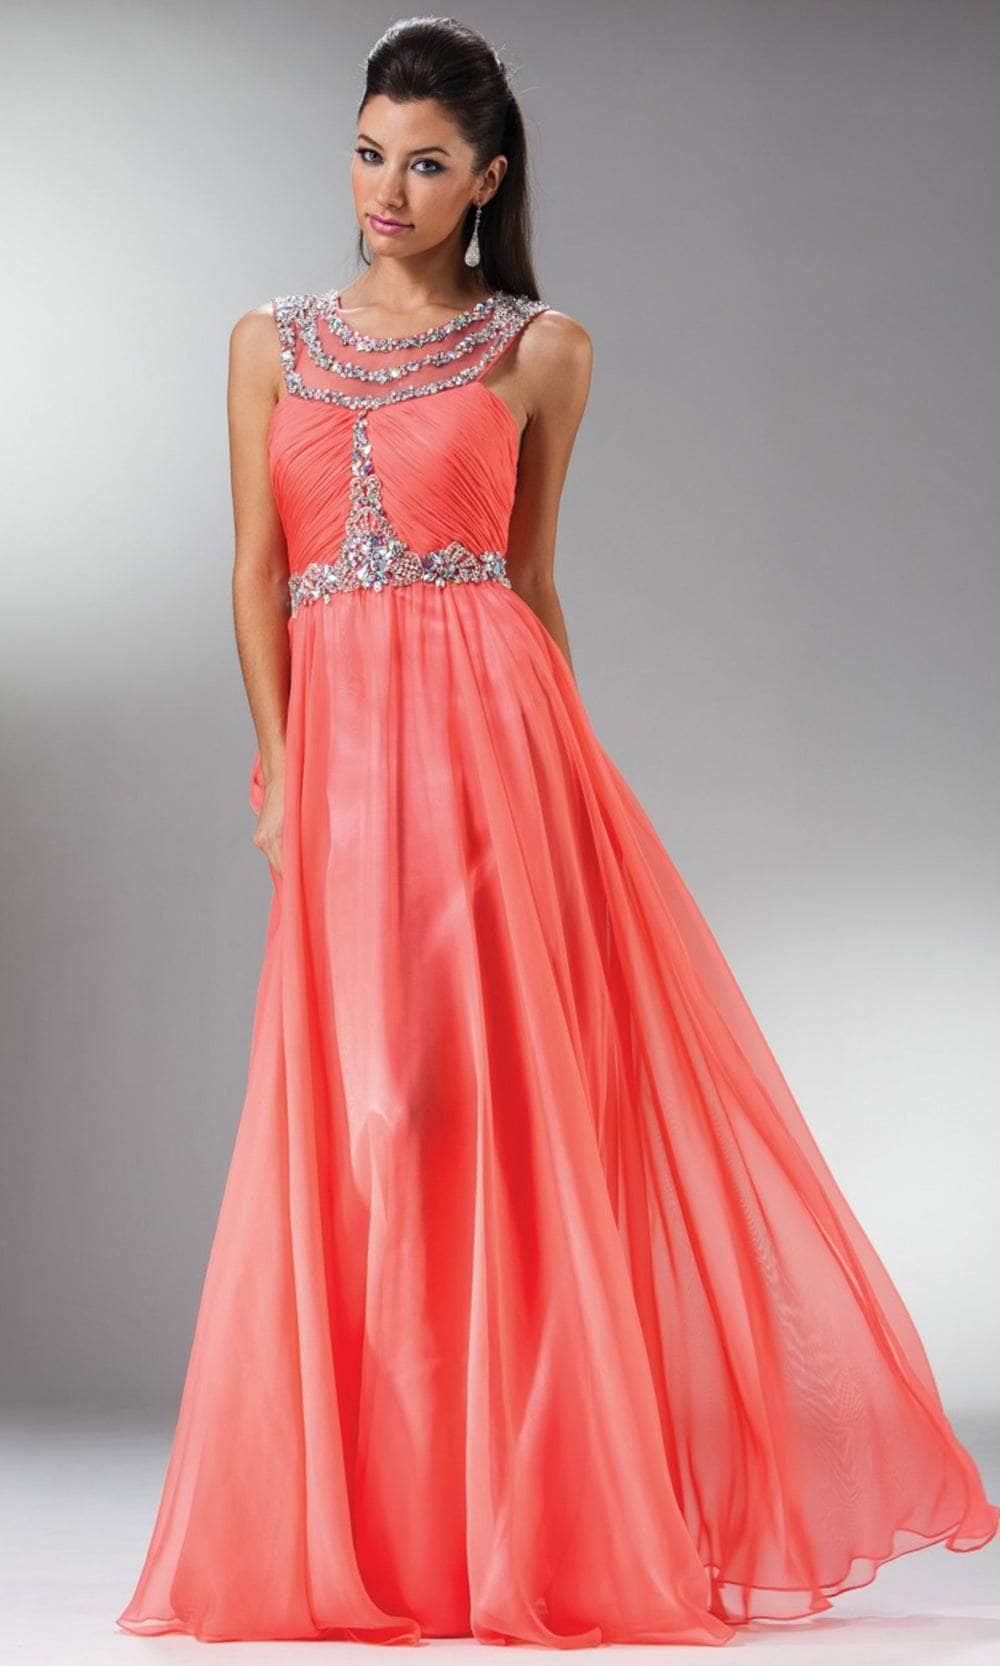 Image of Cinderella Divine 7935 - Jewel Ornate Prom Dress